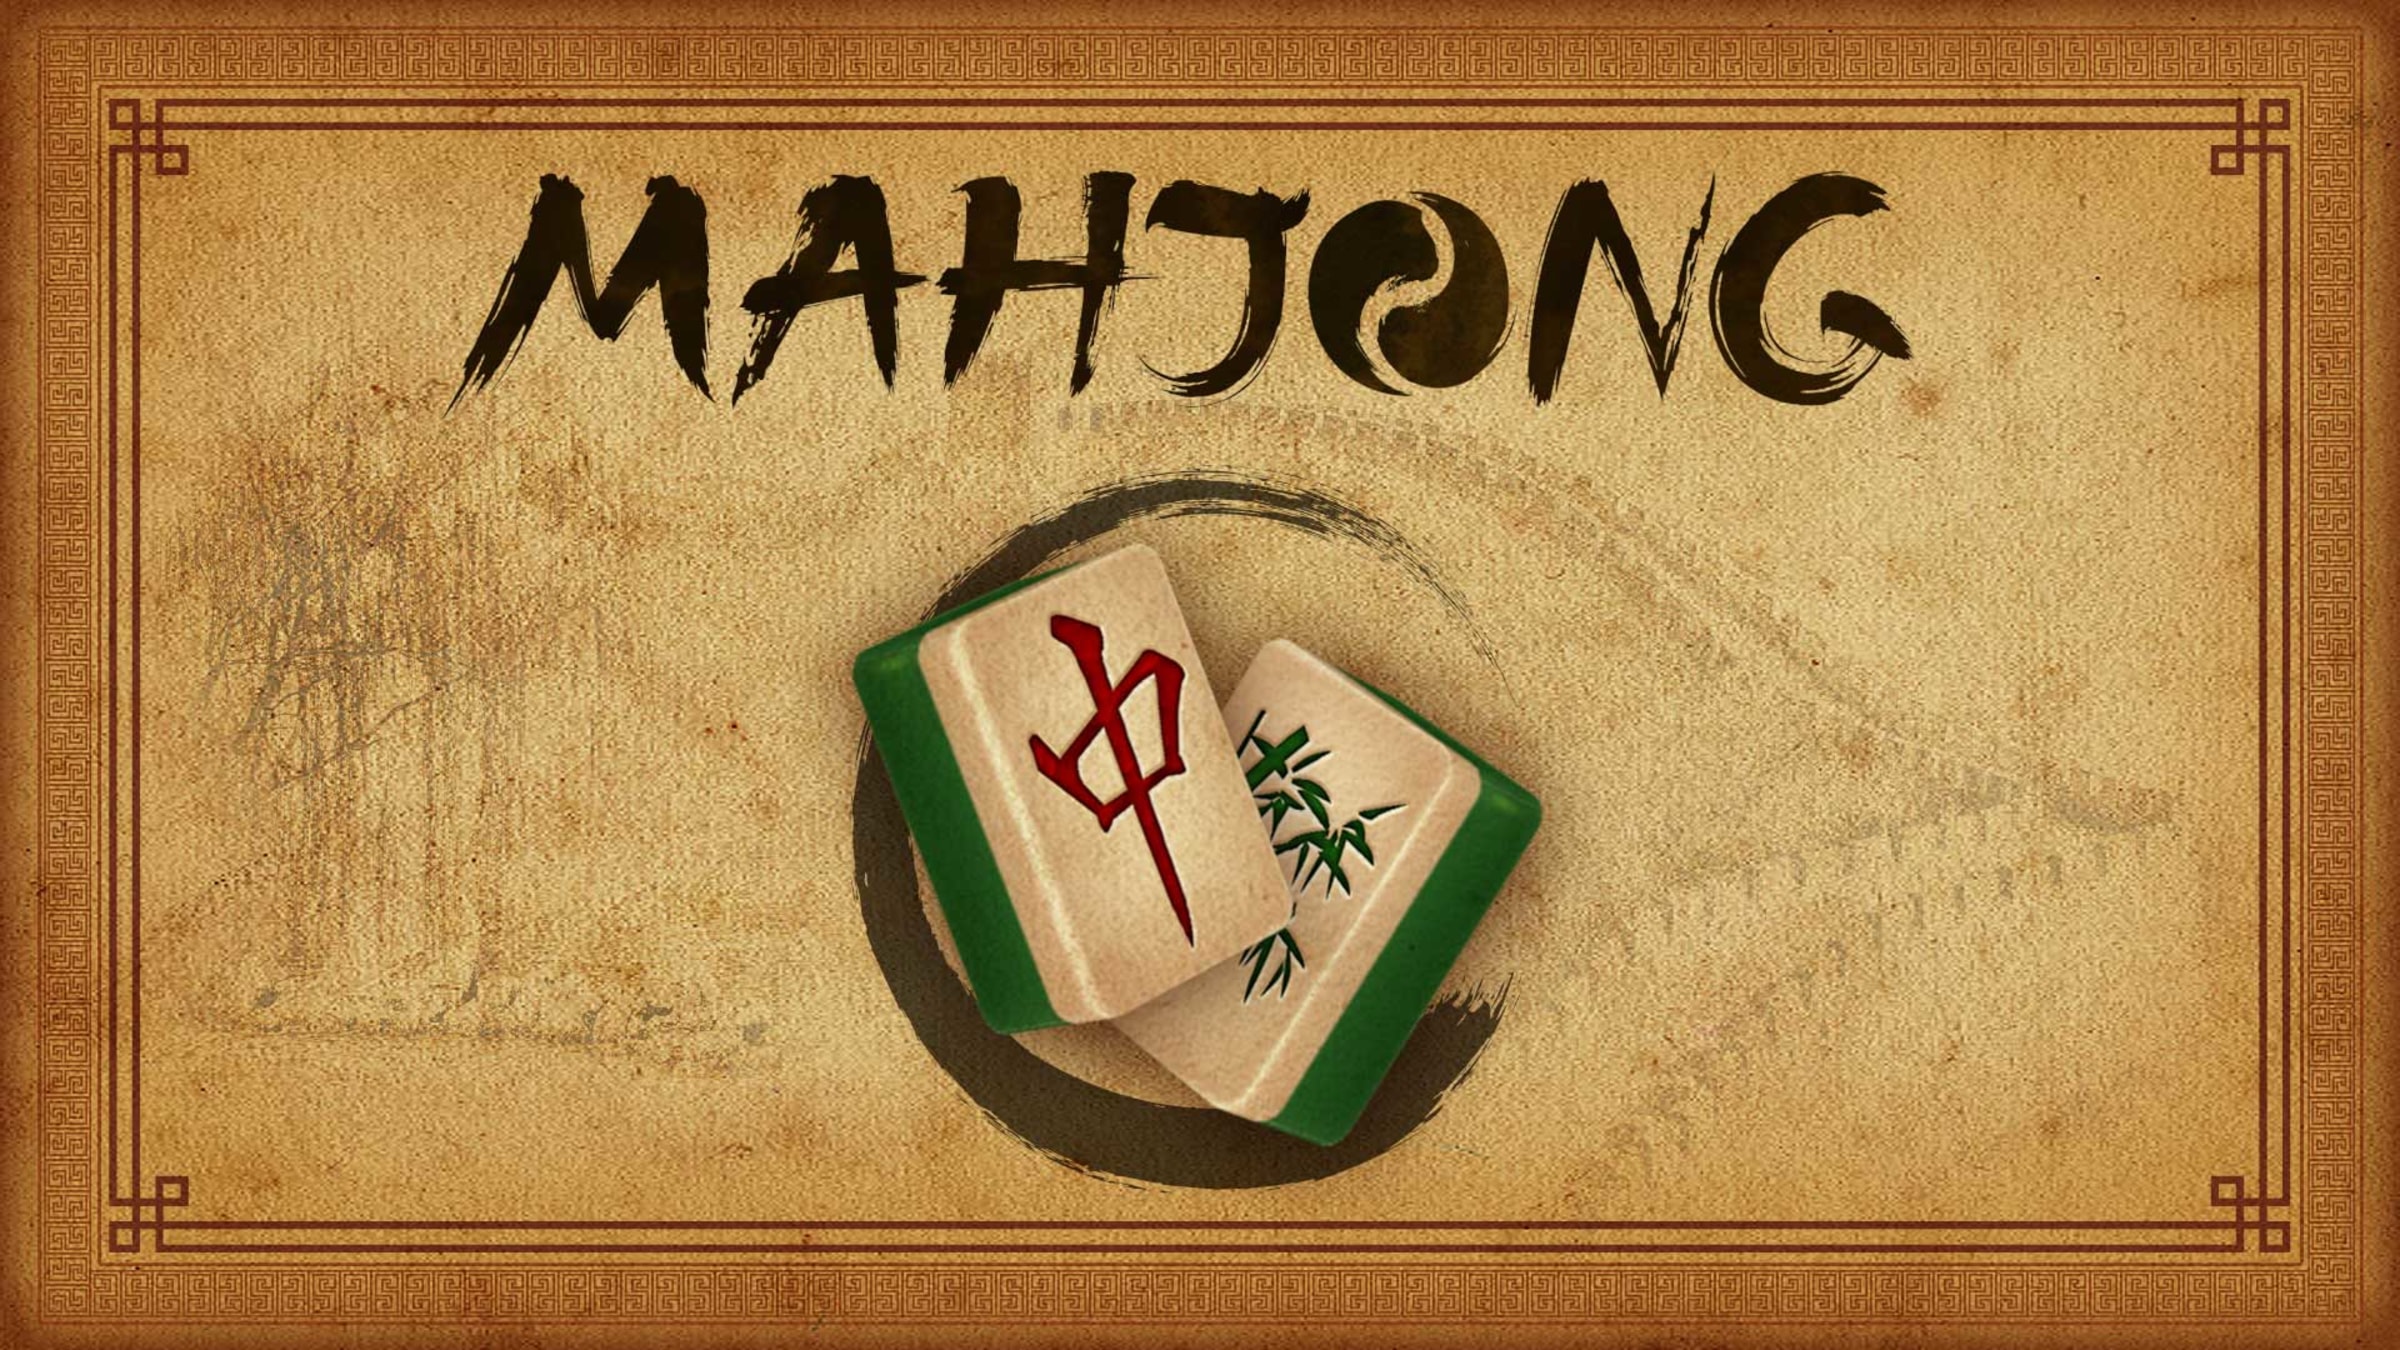 Matching / Mahjongg Games